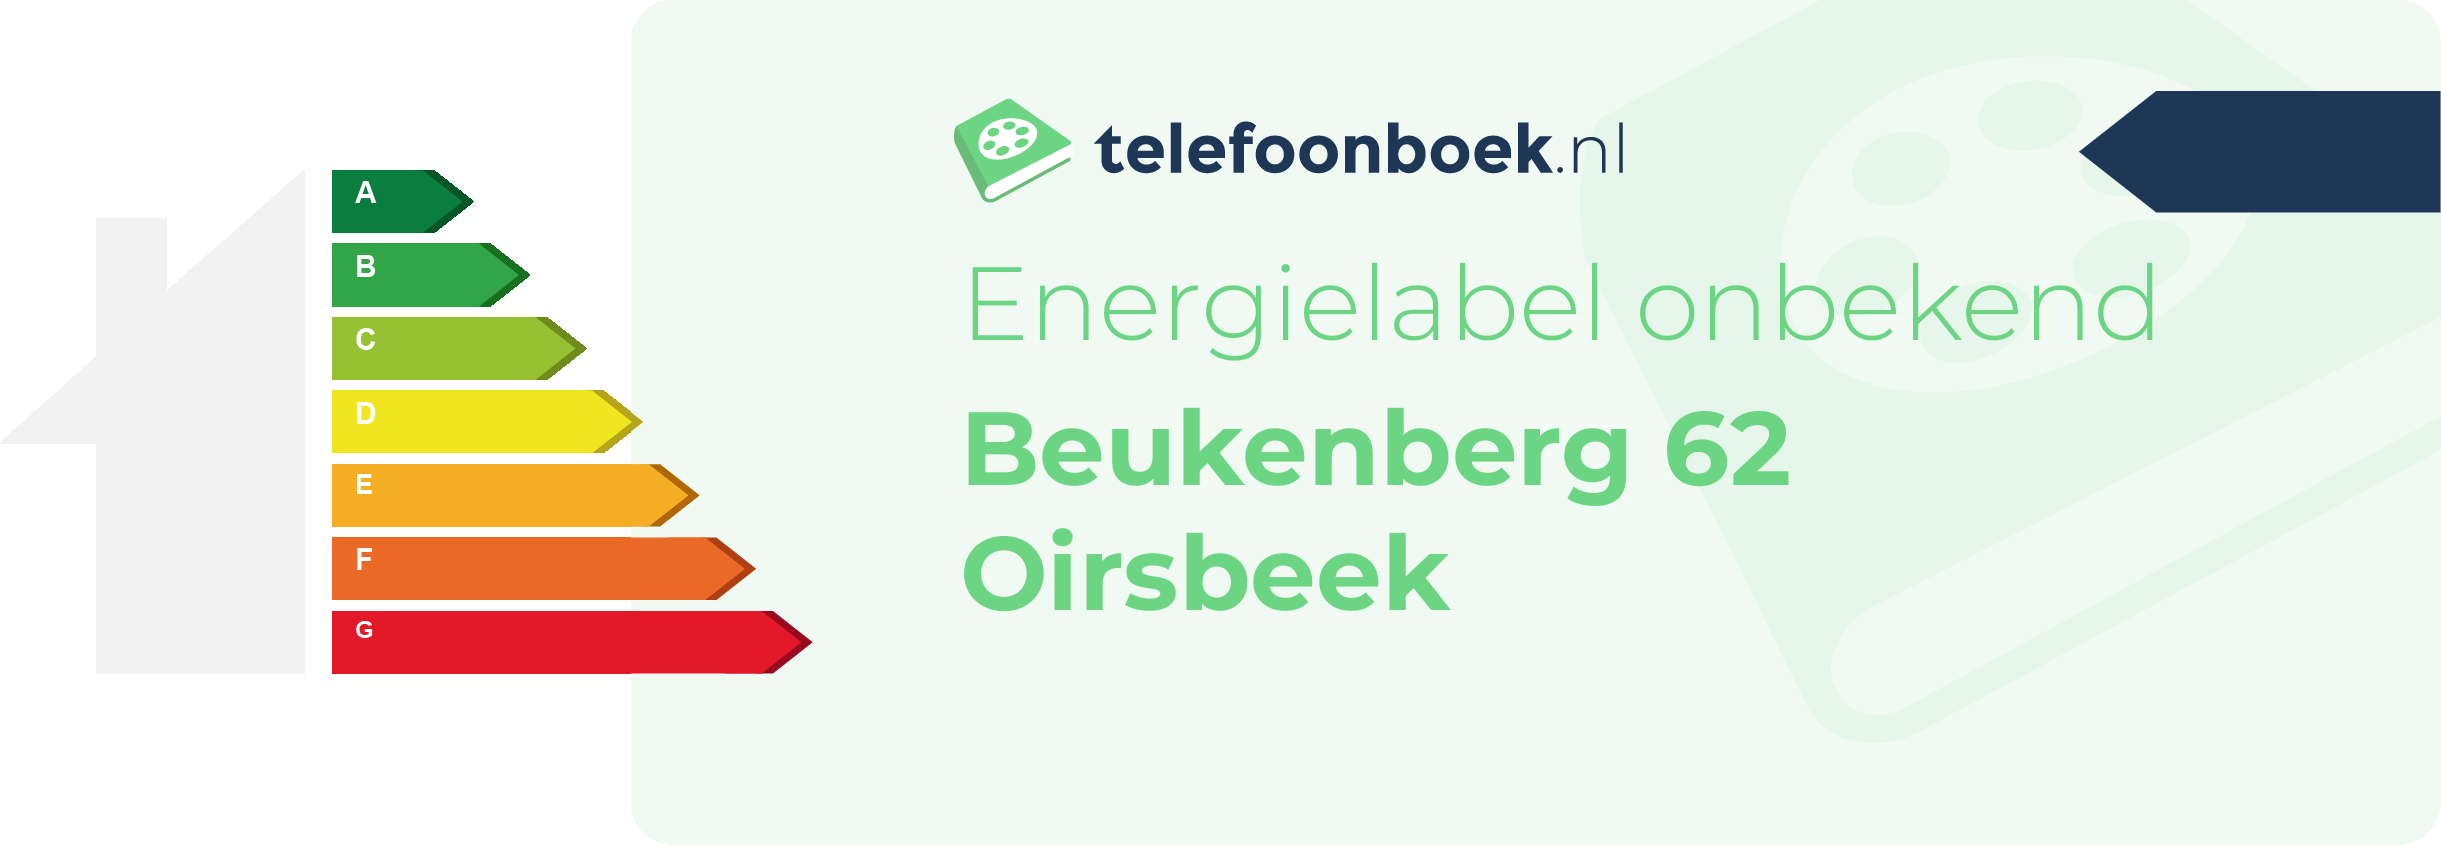 Energielabel Beukenberg 62 Oirsbeek